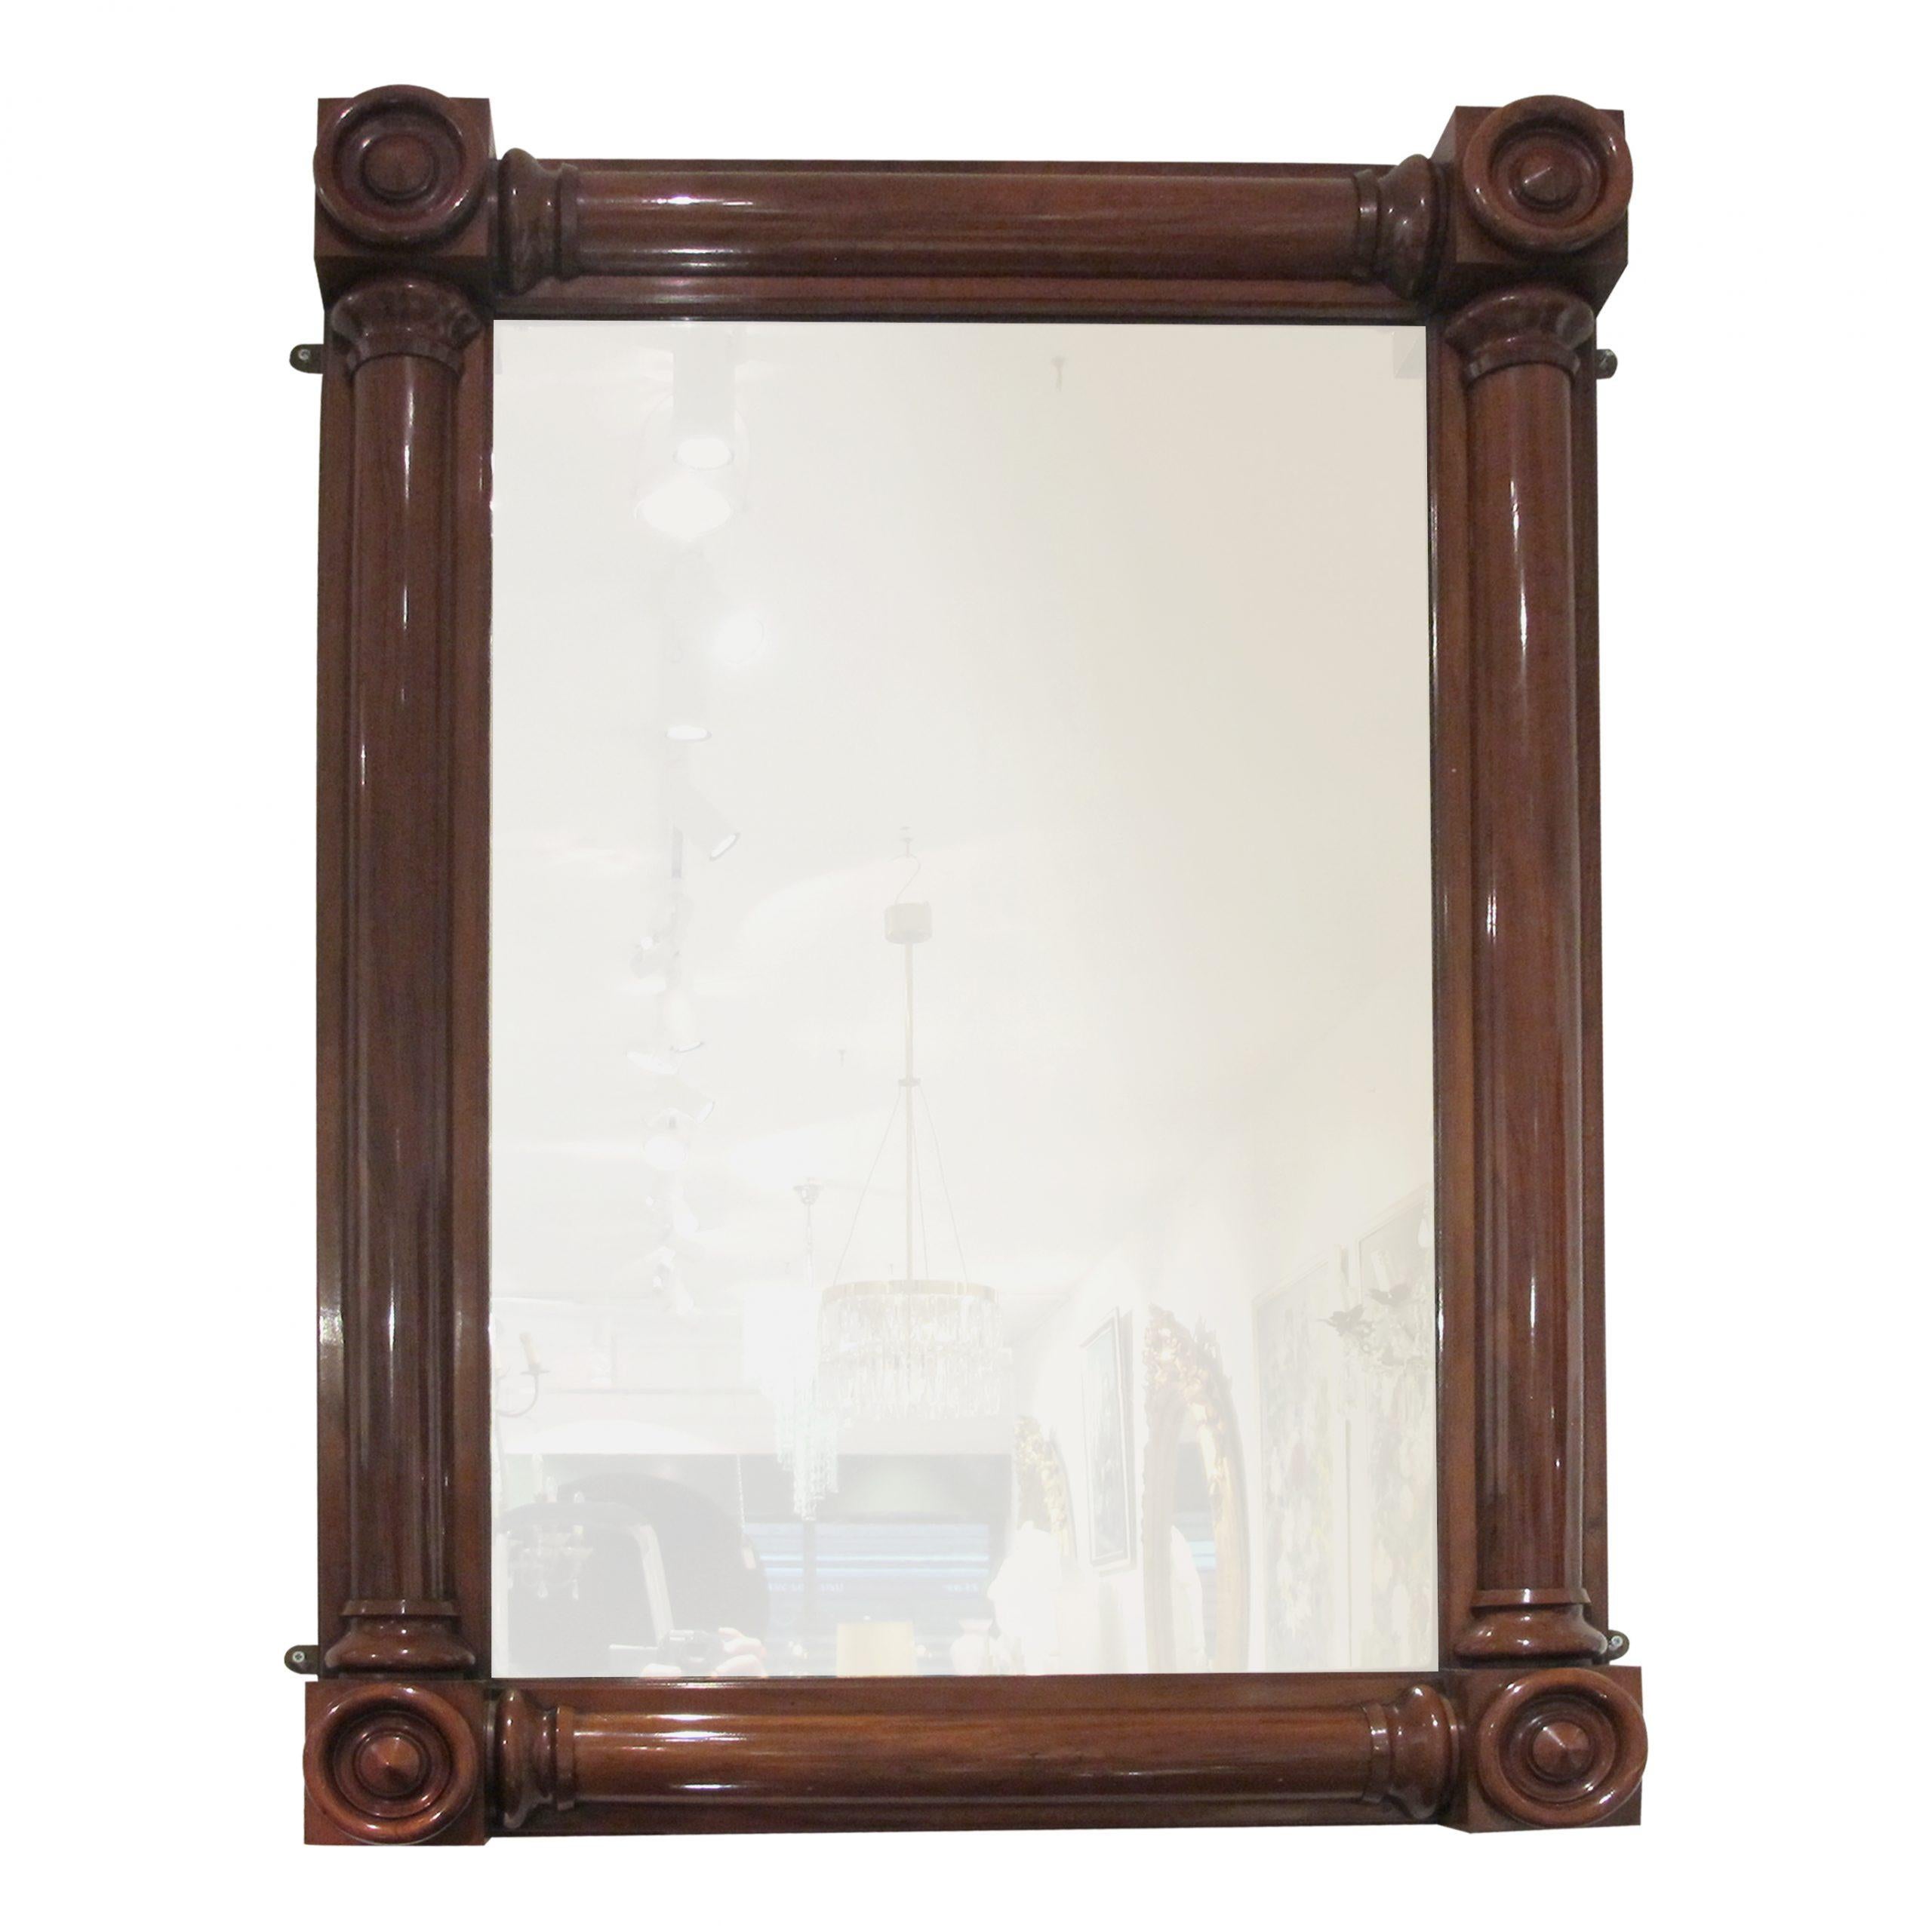 Dies ist eine majestätische strukturelle Mahagoni Wilhelm der IV Spiegel, 1830er Jahre. Die Symmetrie des Spiegels erlaubt es, ihn allein, über einem Kaminsims oder im Querformat aufzustellen. Das Originalglas weist kaum merkliche Anzeichen von